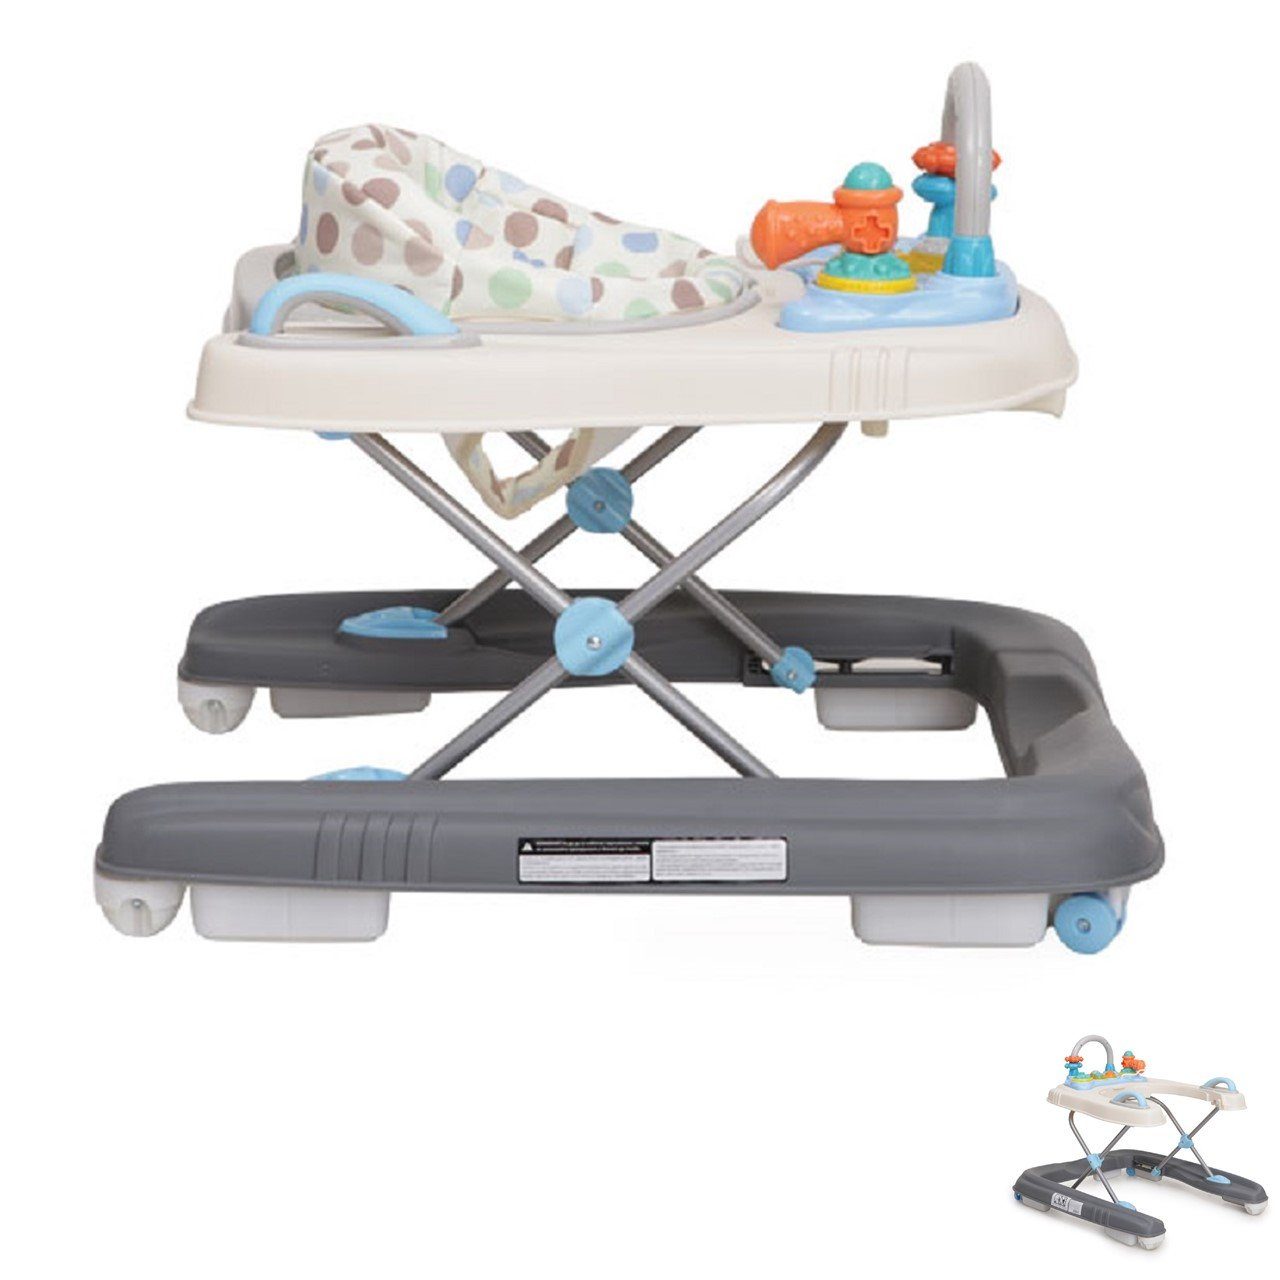 Moni Rückenlehne, Dotty 2 blau in mit 1, Schwenkräder Spielcenter, hohe vorne Lauflernwagen Lauflernhilfe